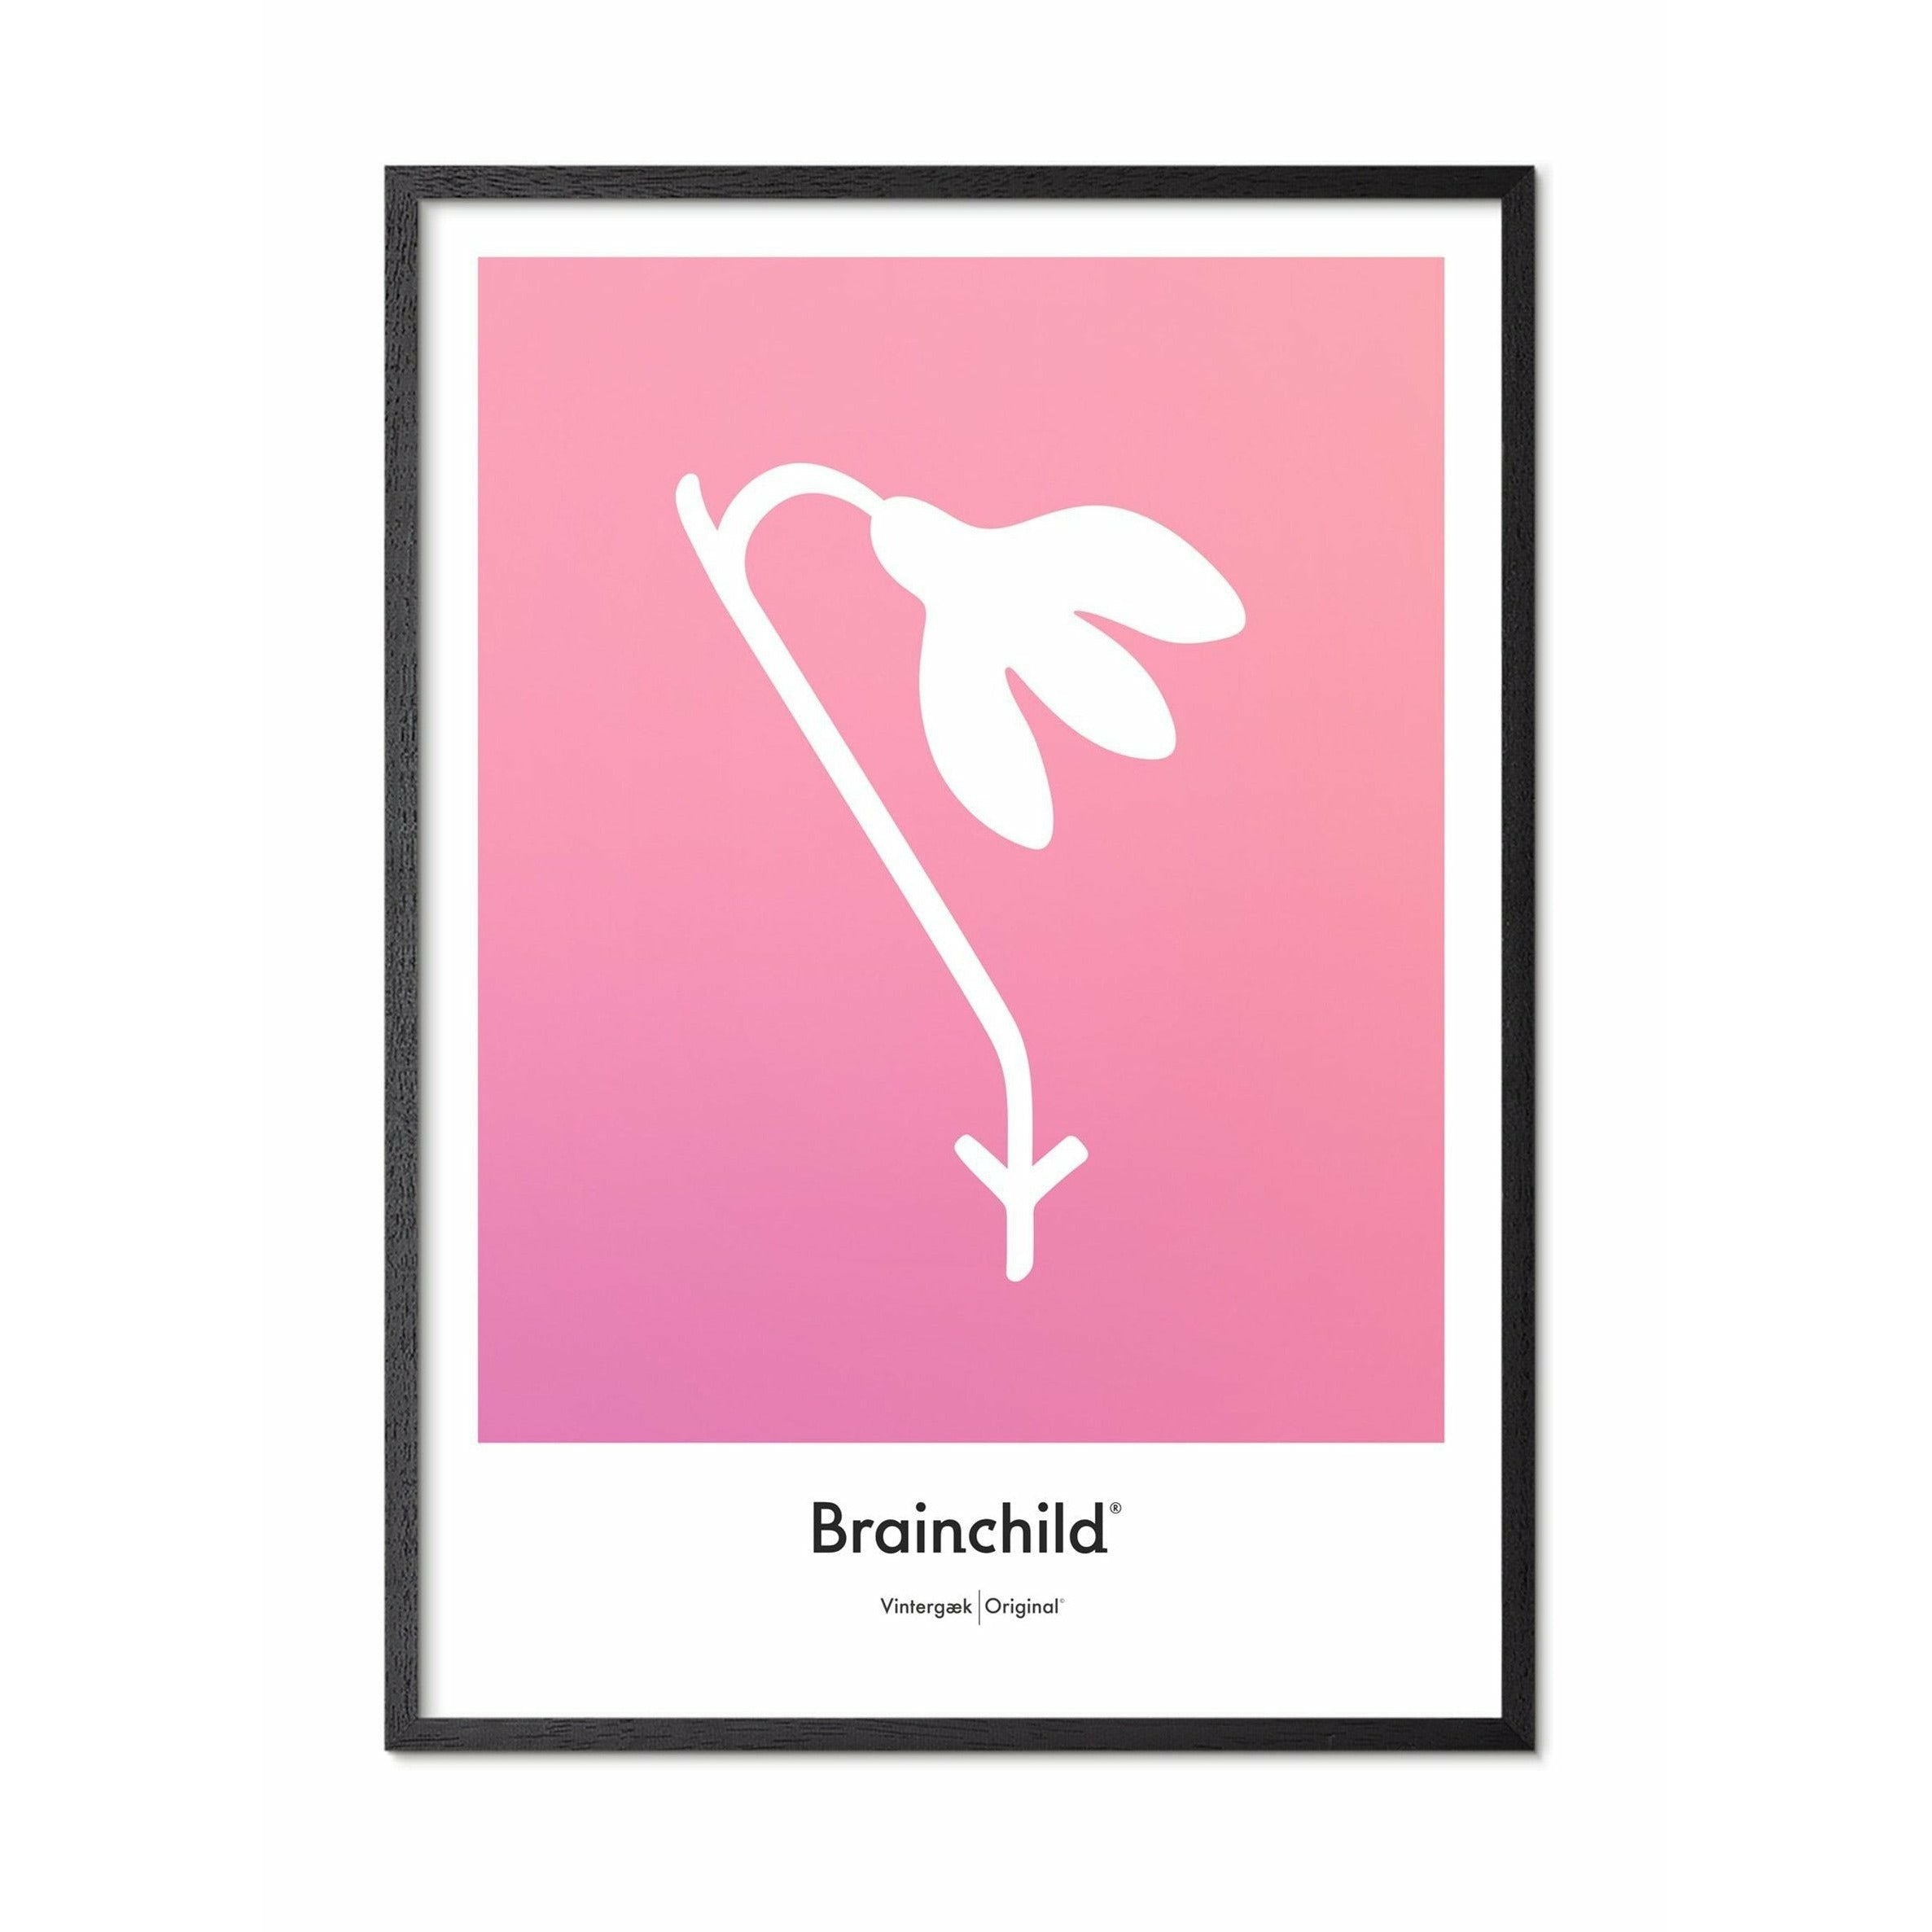 Brainchild Affiche de l'icône de conception de neige, cadre en bois de laqué noir A5, rose